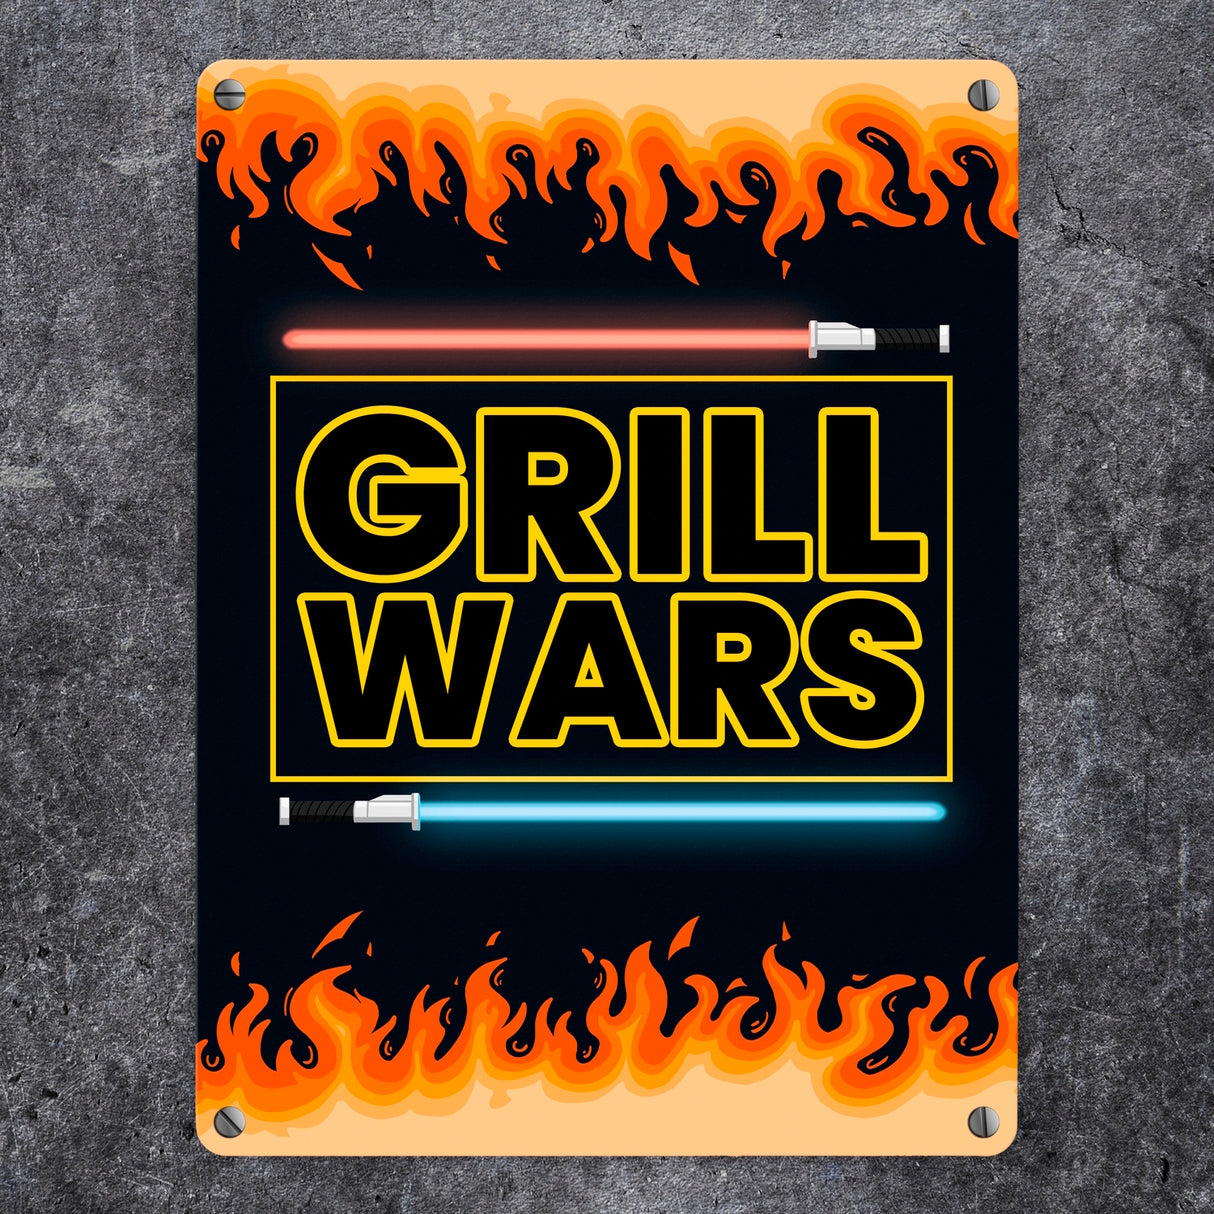 Grill Wars Metallschild für den Grill mit Laserschwert